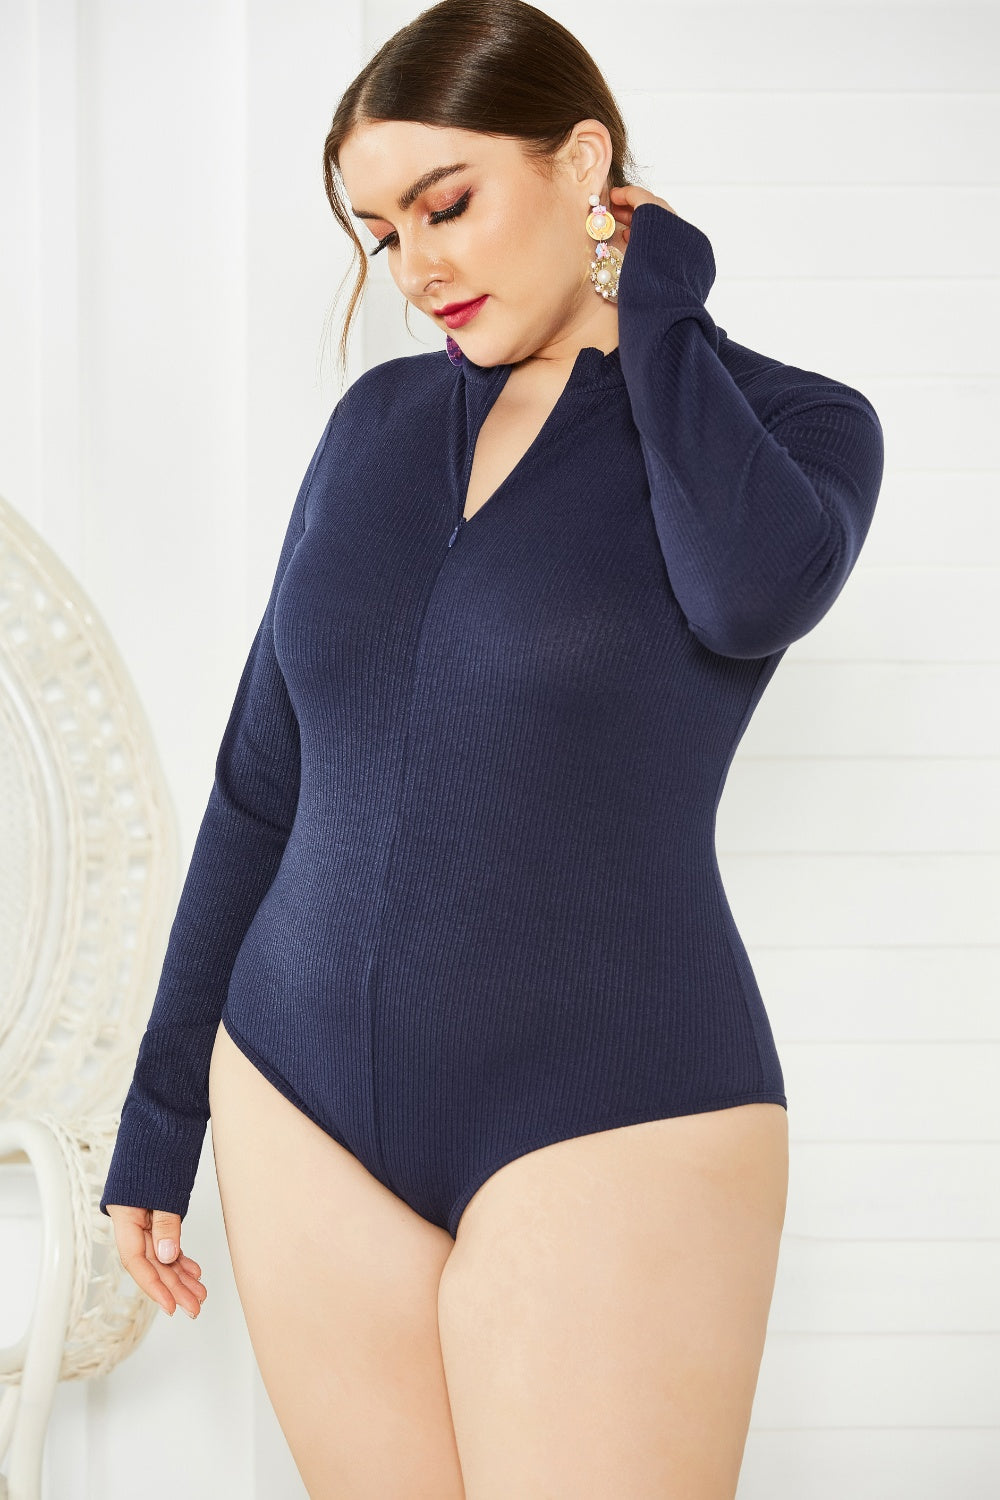 BodiModi UrbanFit ® Zip-Up Long Sleeve Bodysuit - Trendy Plus Size